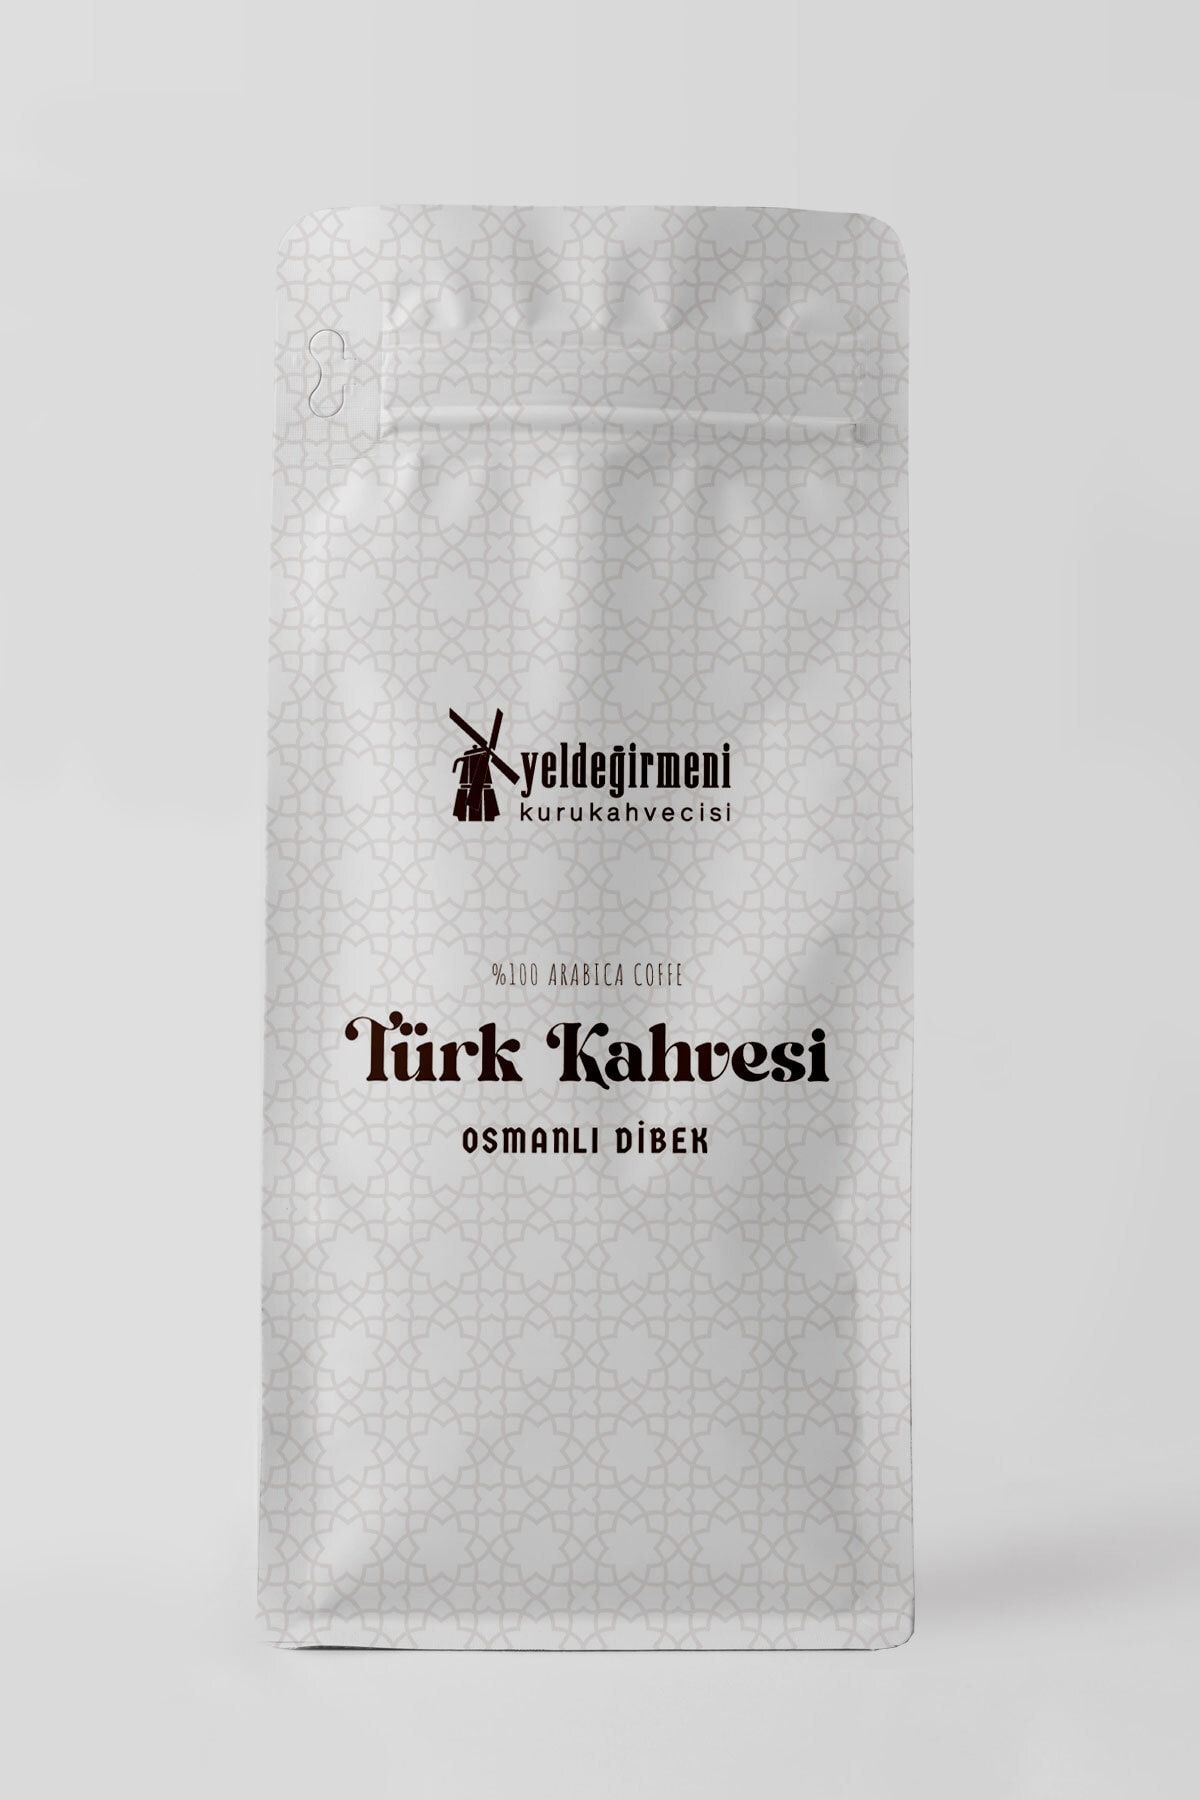 Yeldeğirmeni Kurukahvecisi Osmanlı Dibek Kahvesi 500 gr